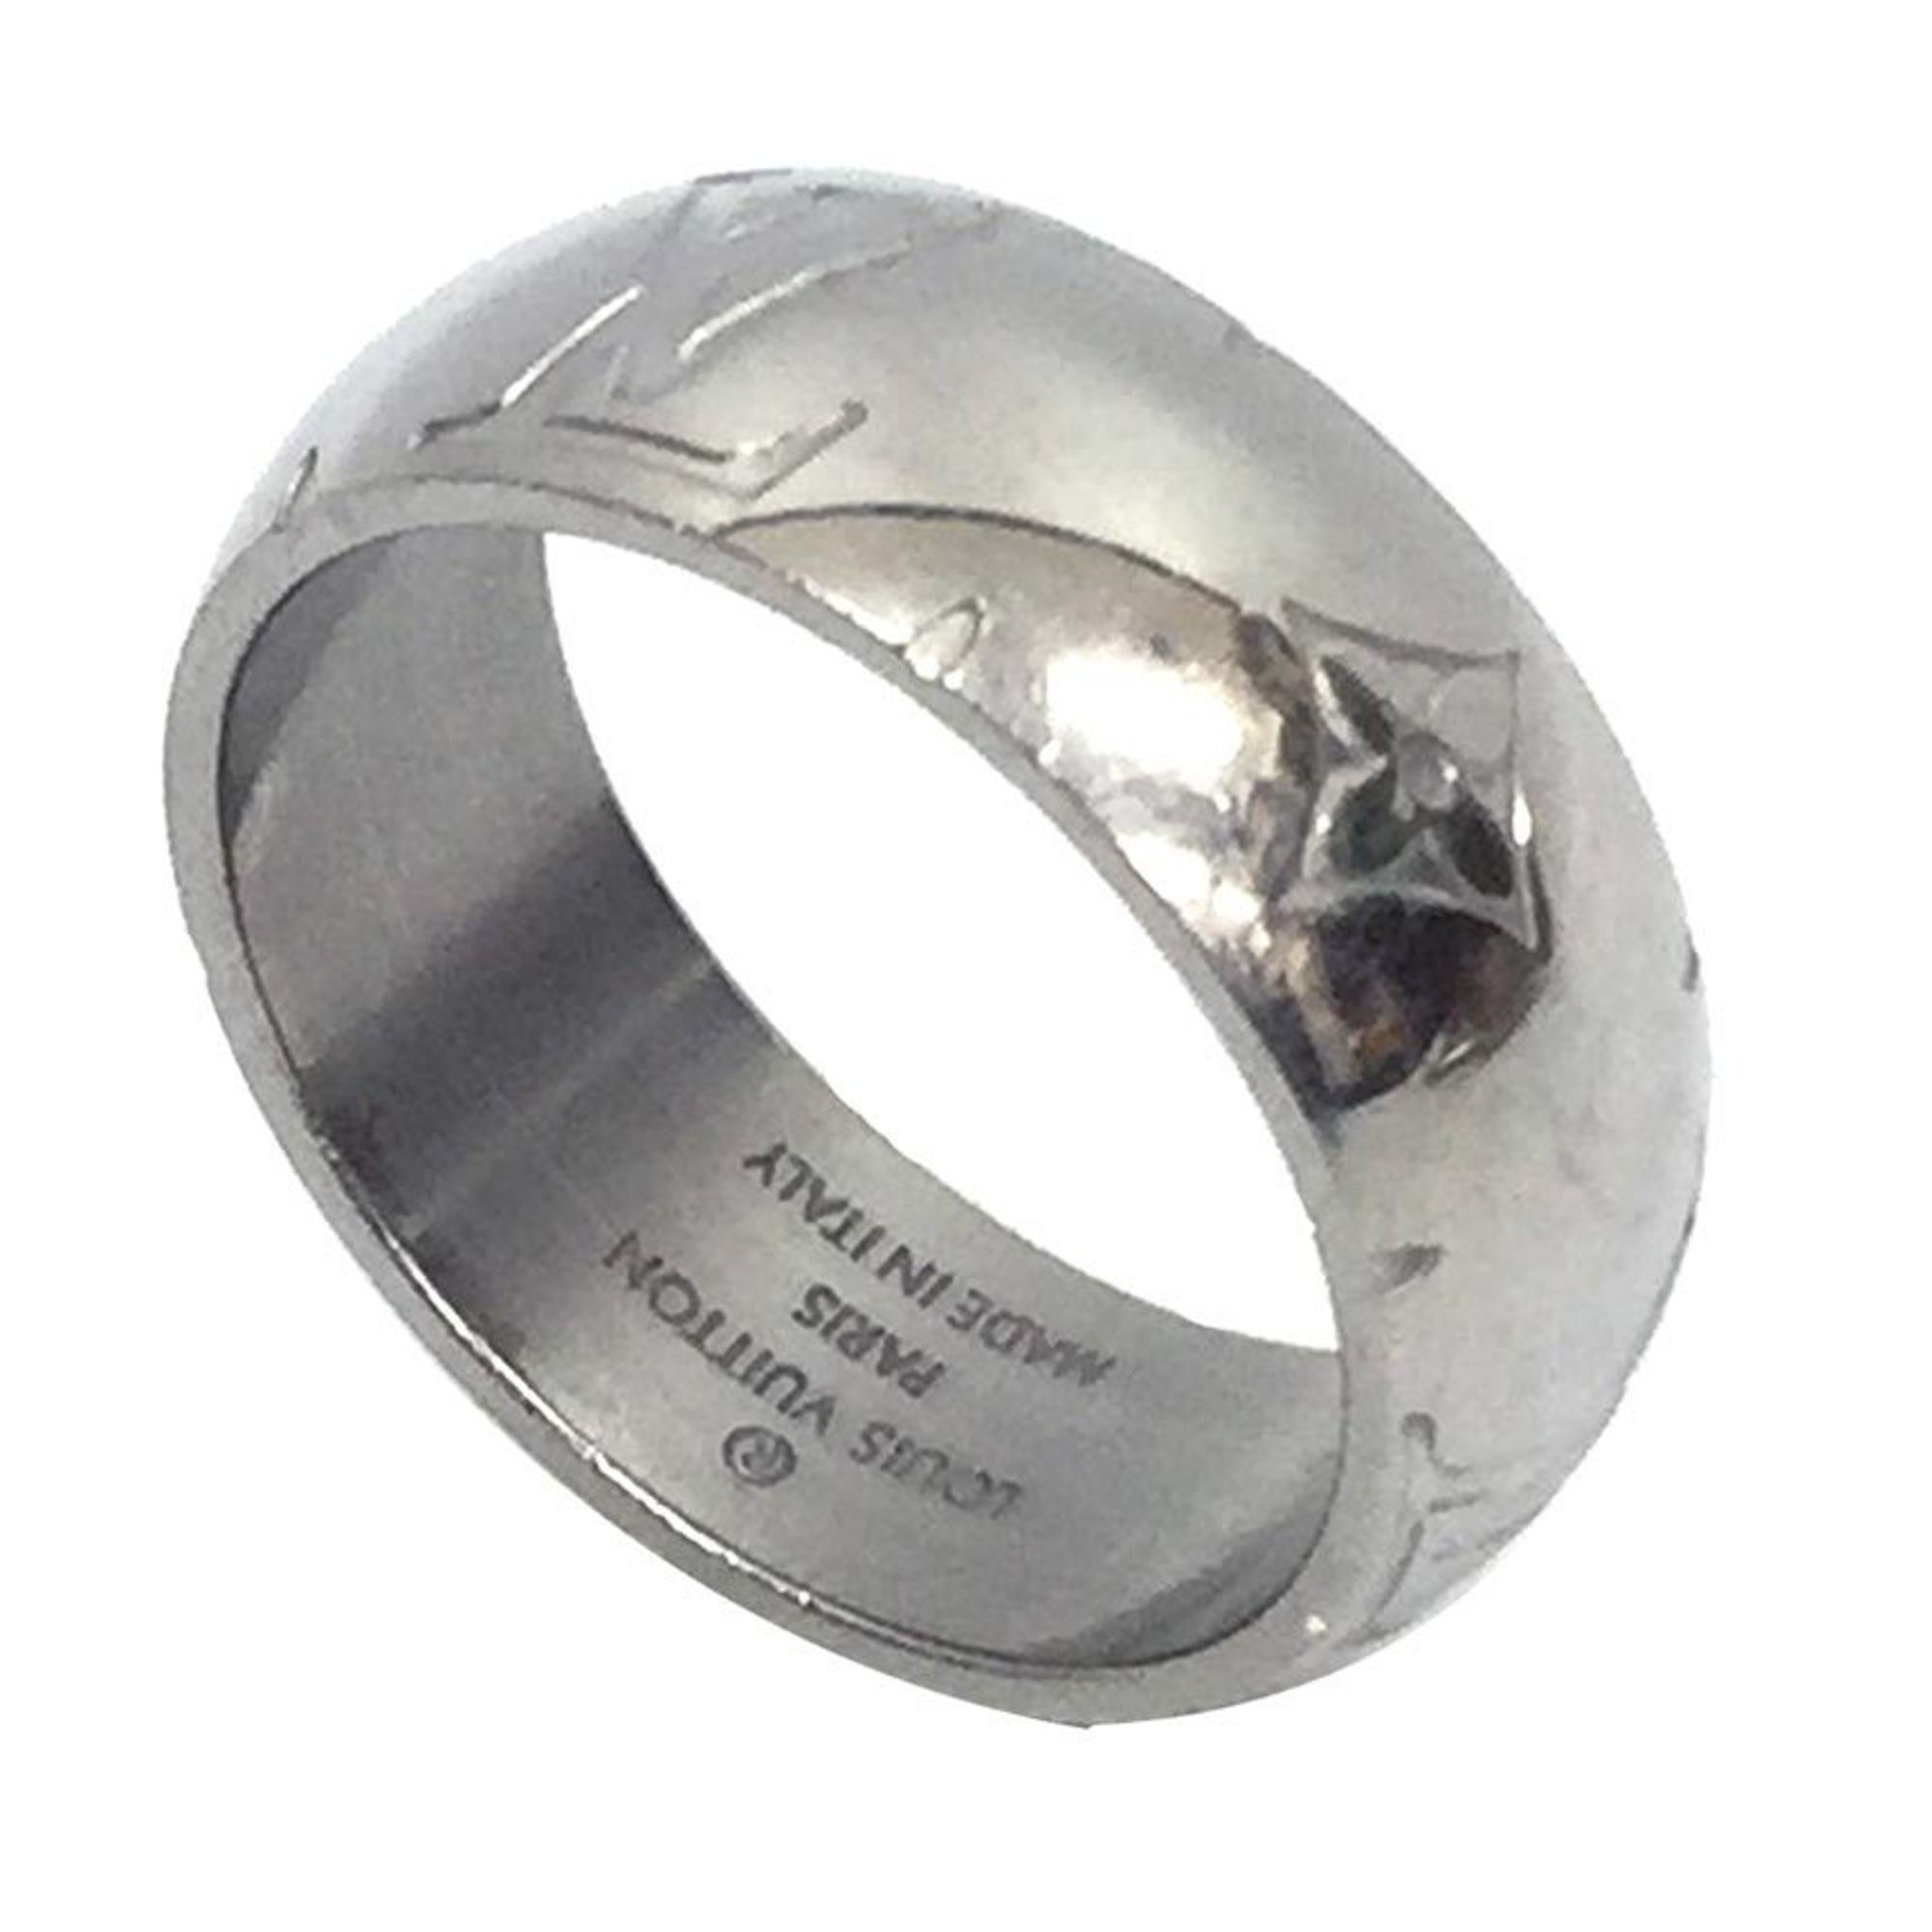 LOUIS VUITTON LOUIS VUITTON Ring Necklace Monogram collier pendant M62485  metal Silver Used M62485